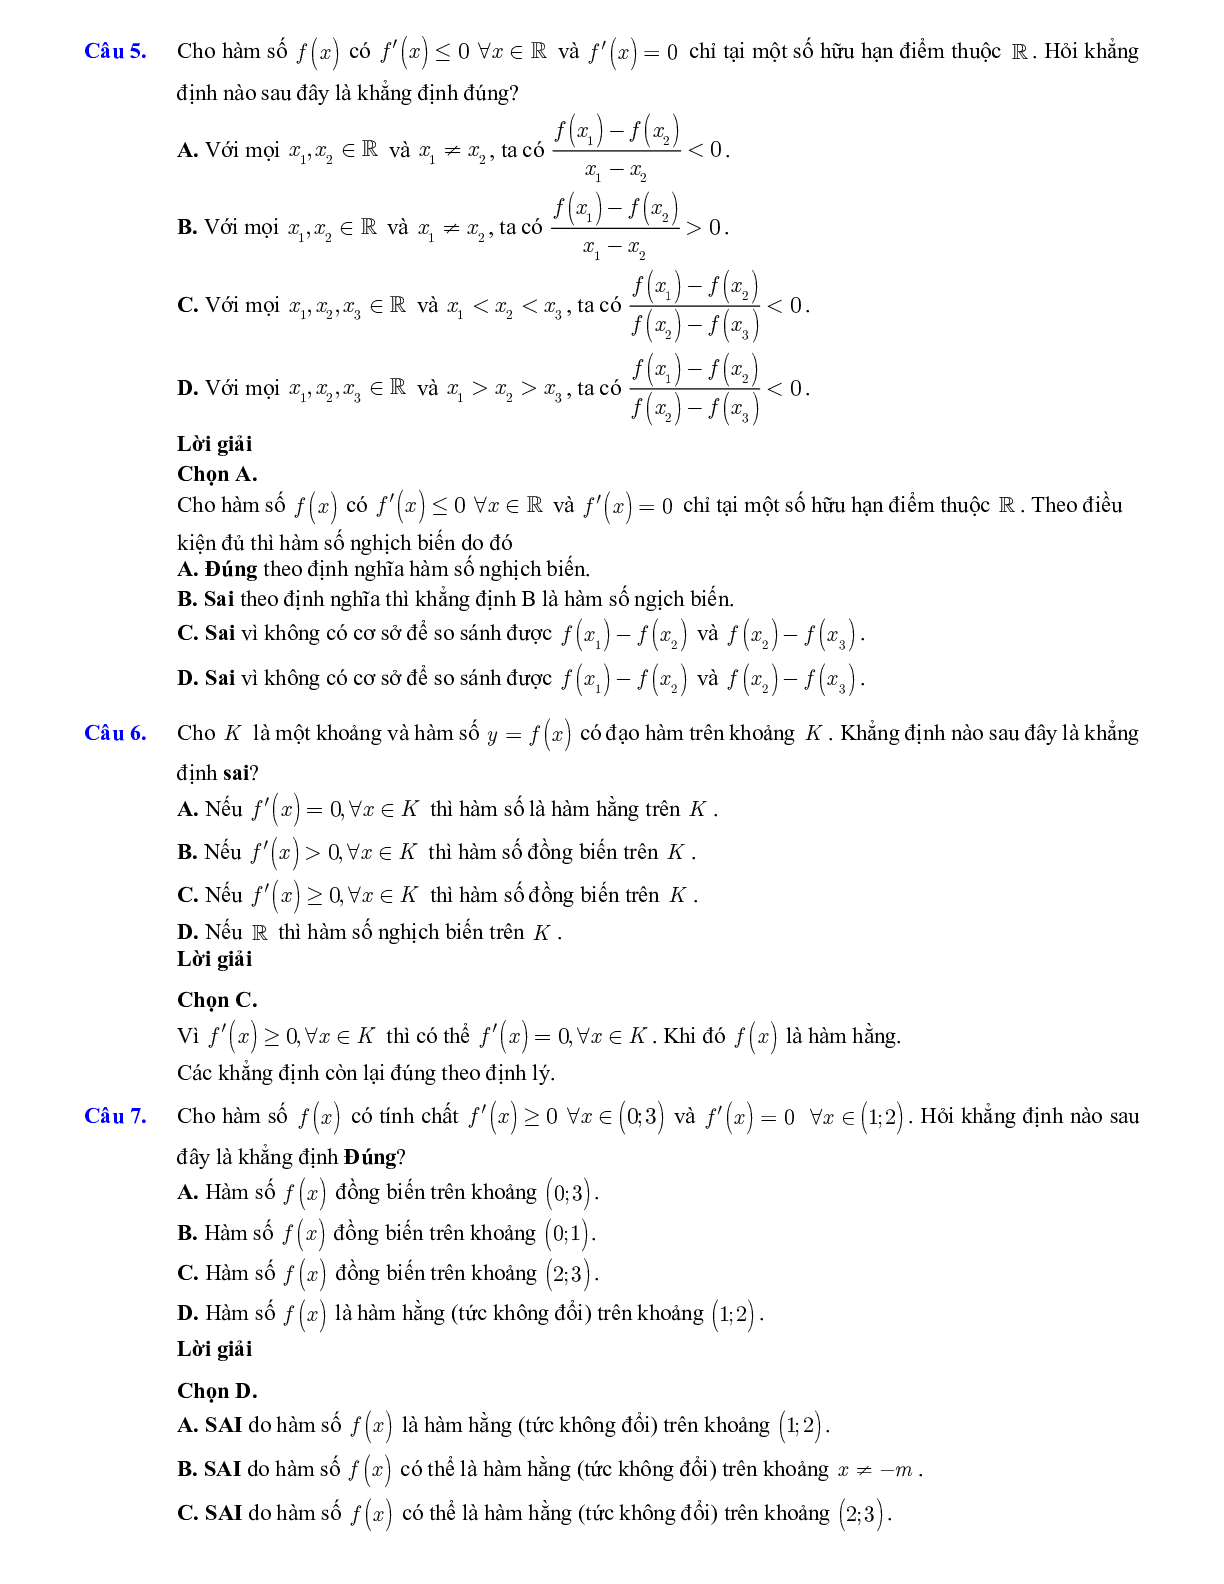 Lý thuyết và bài tập xét tính đơn điệu của hàm số ôn thi THPTQG (trang 5)